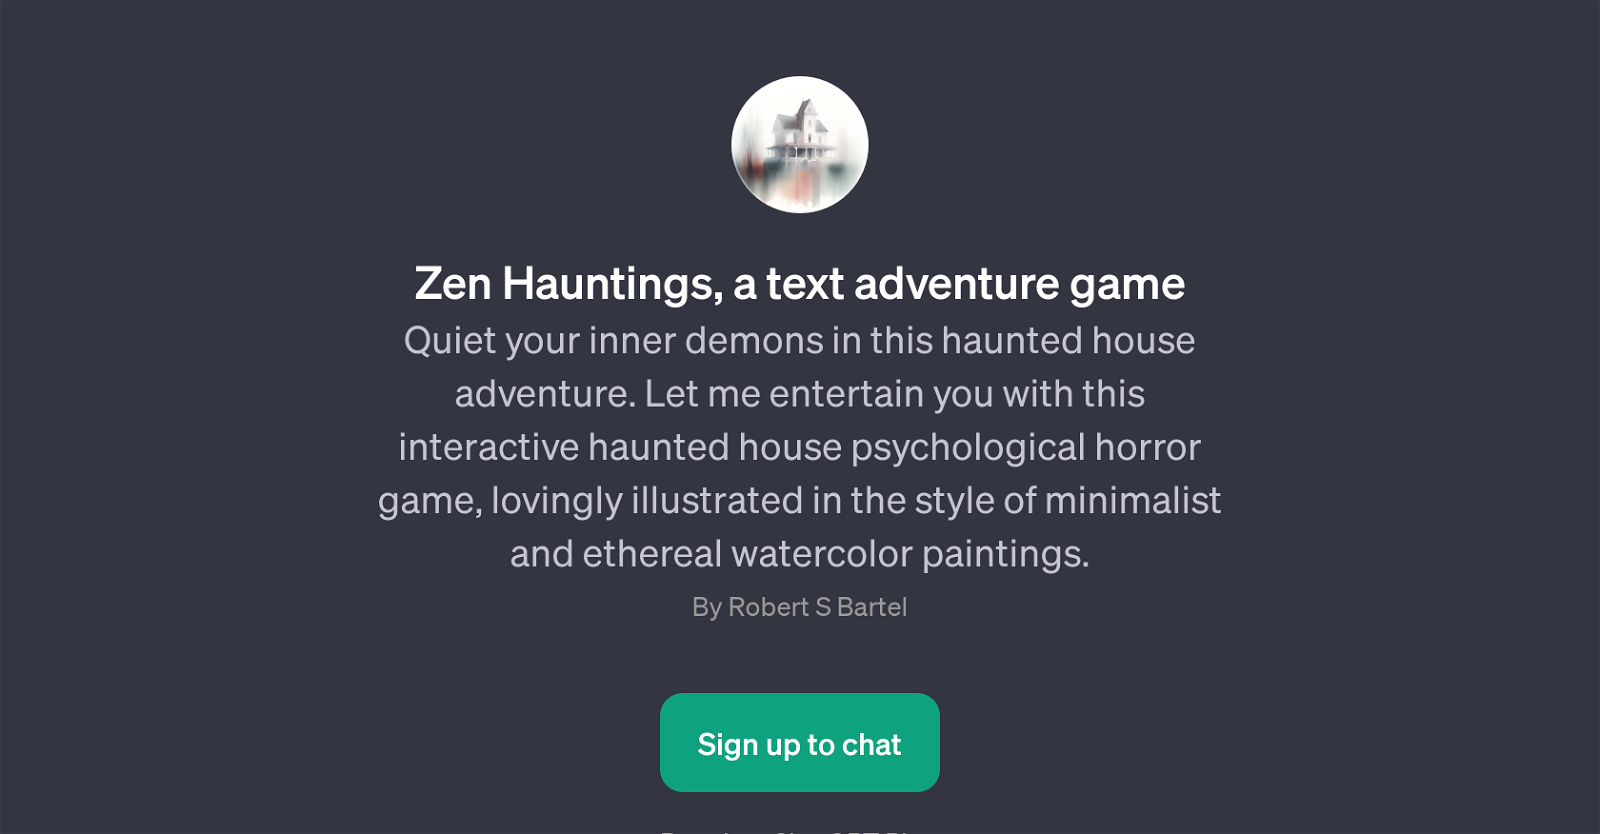 Zen Hauntings website